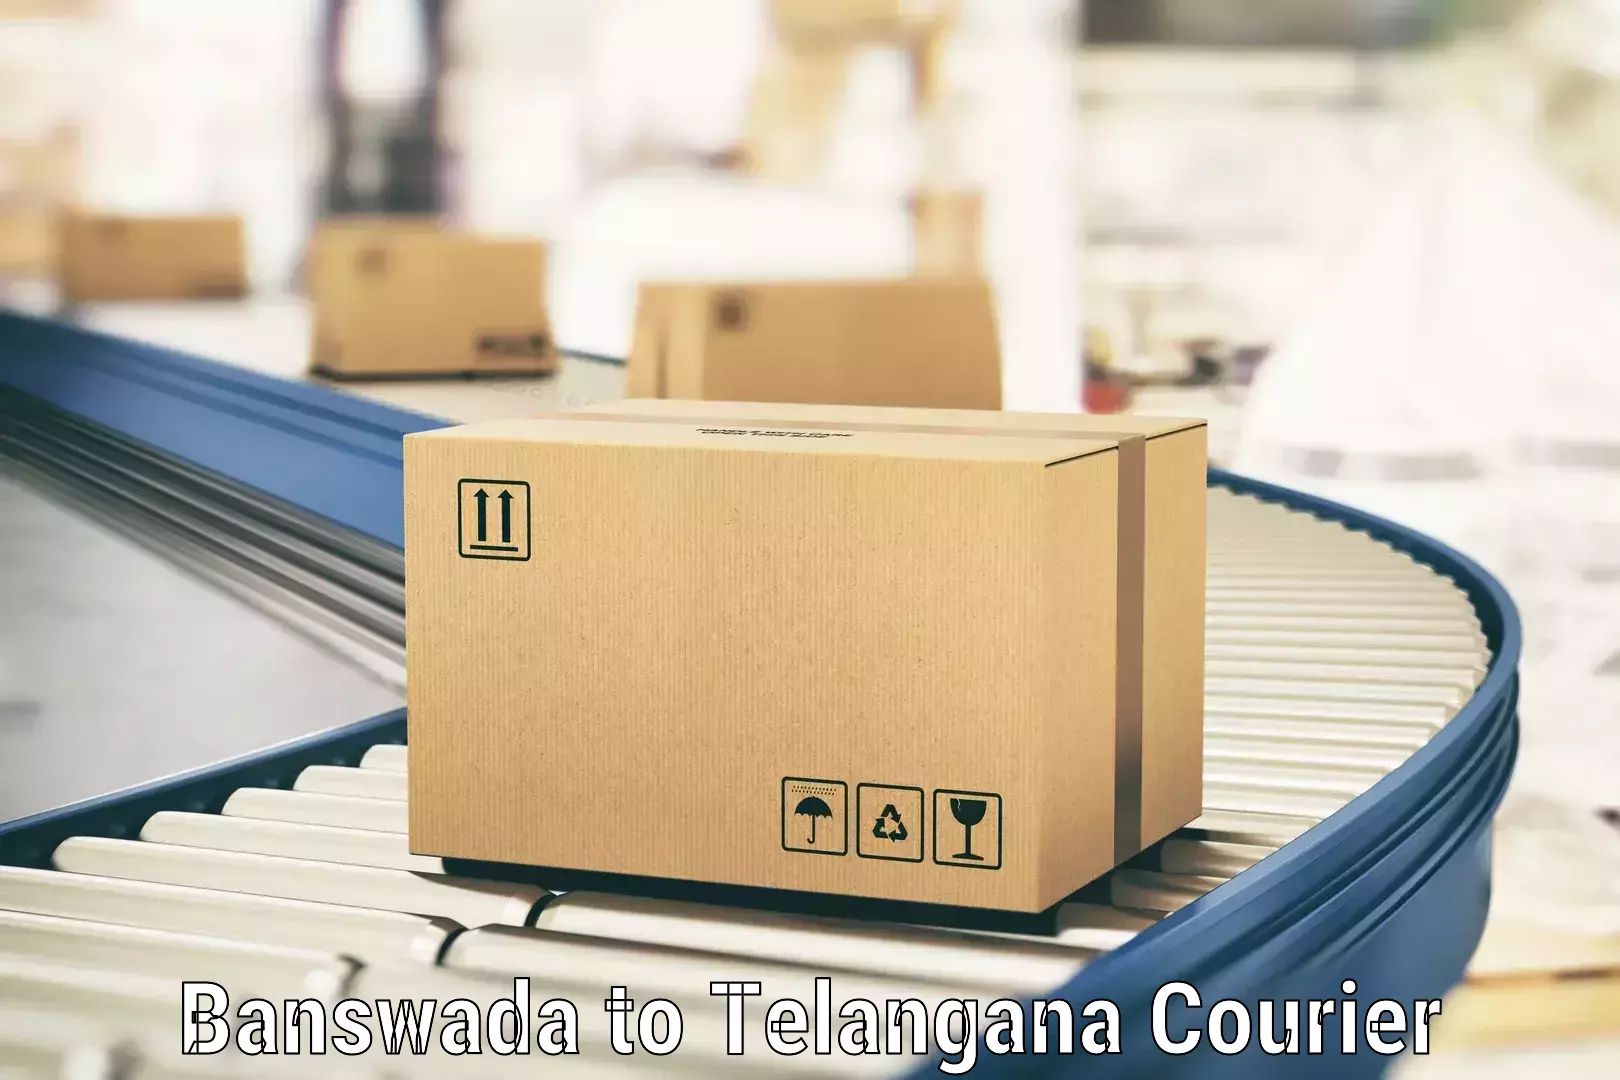 Efficient parcel transport in Banswada to Odela